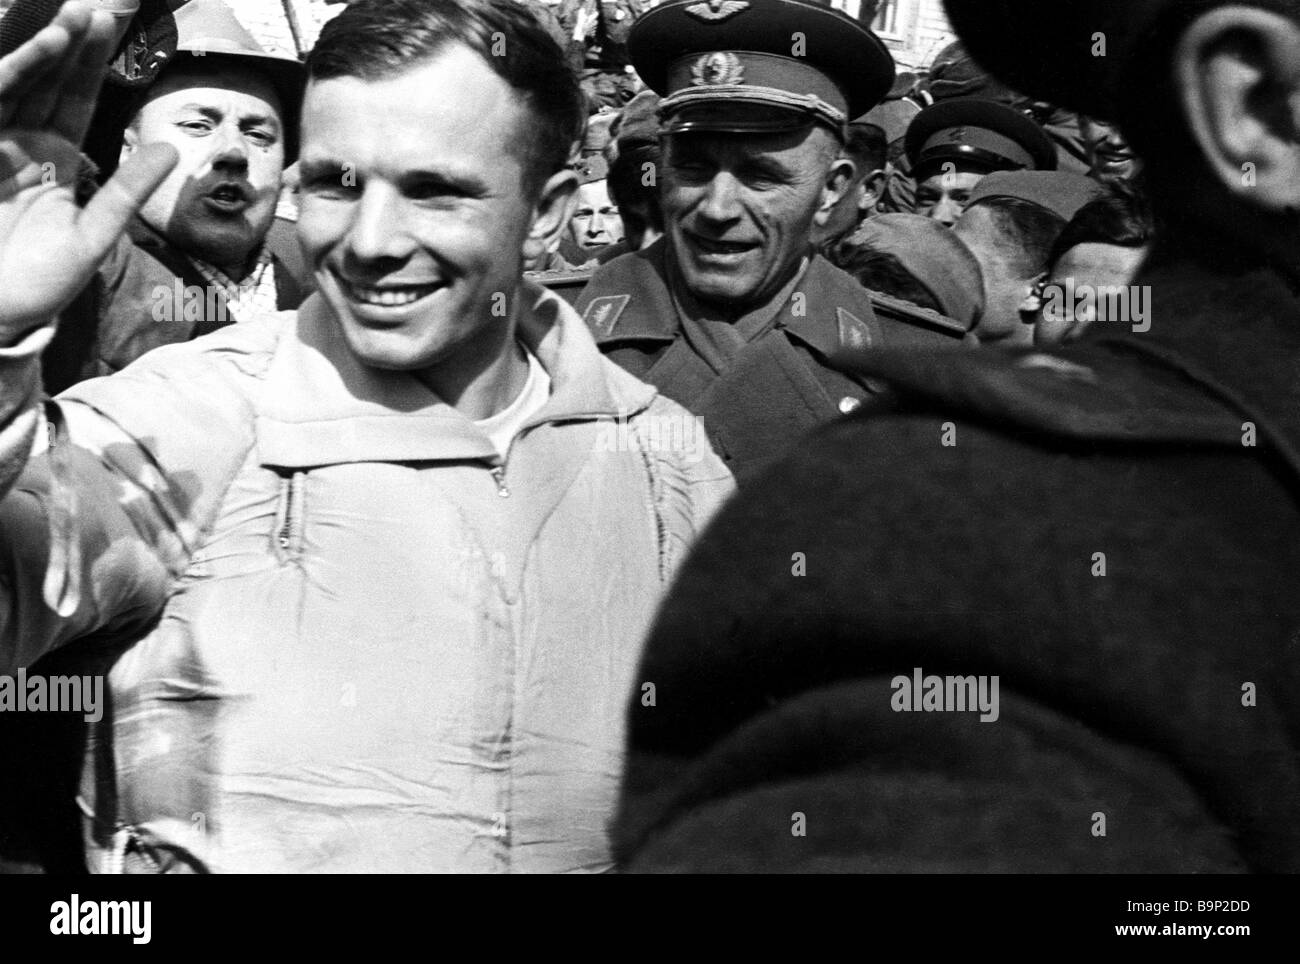 Какую награду получил гагарин сразу после приземления. Гагарин. Приземление 1961. Фото приземления Юрия Гагарина.